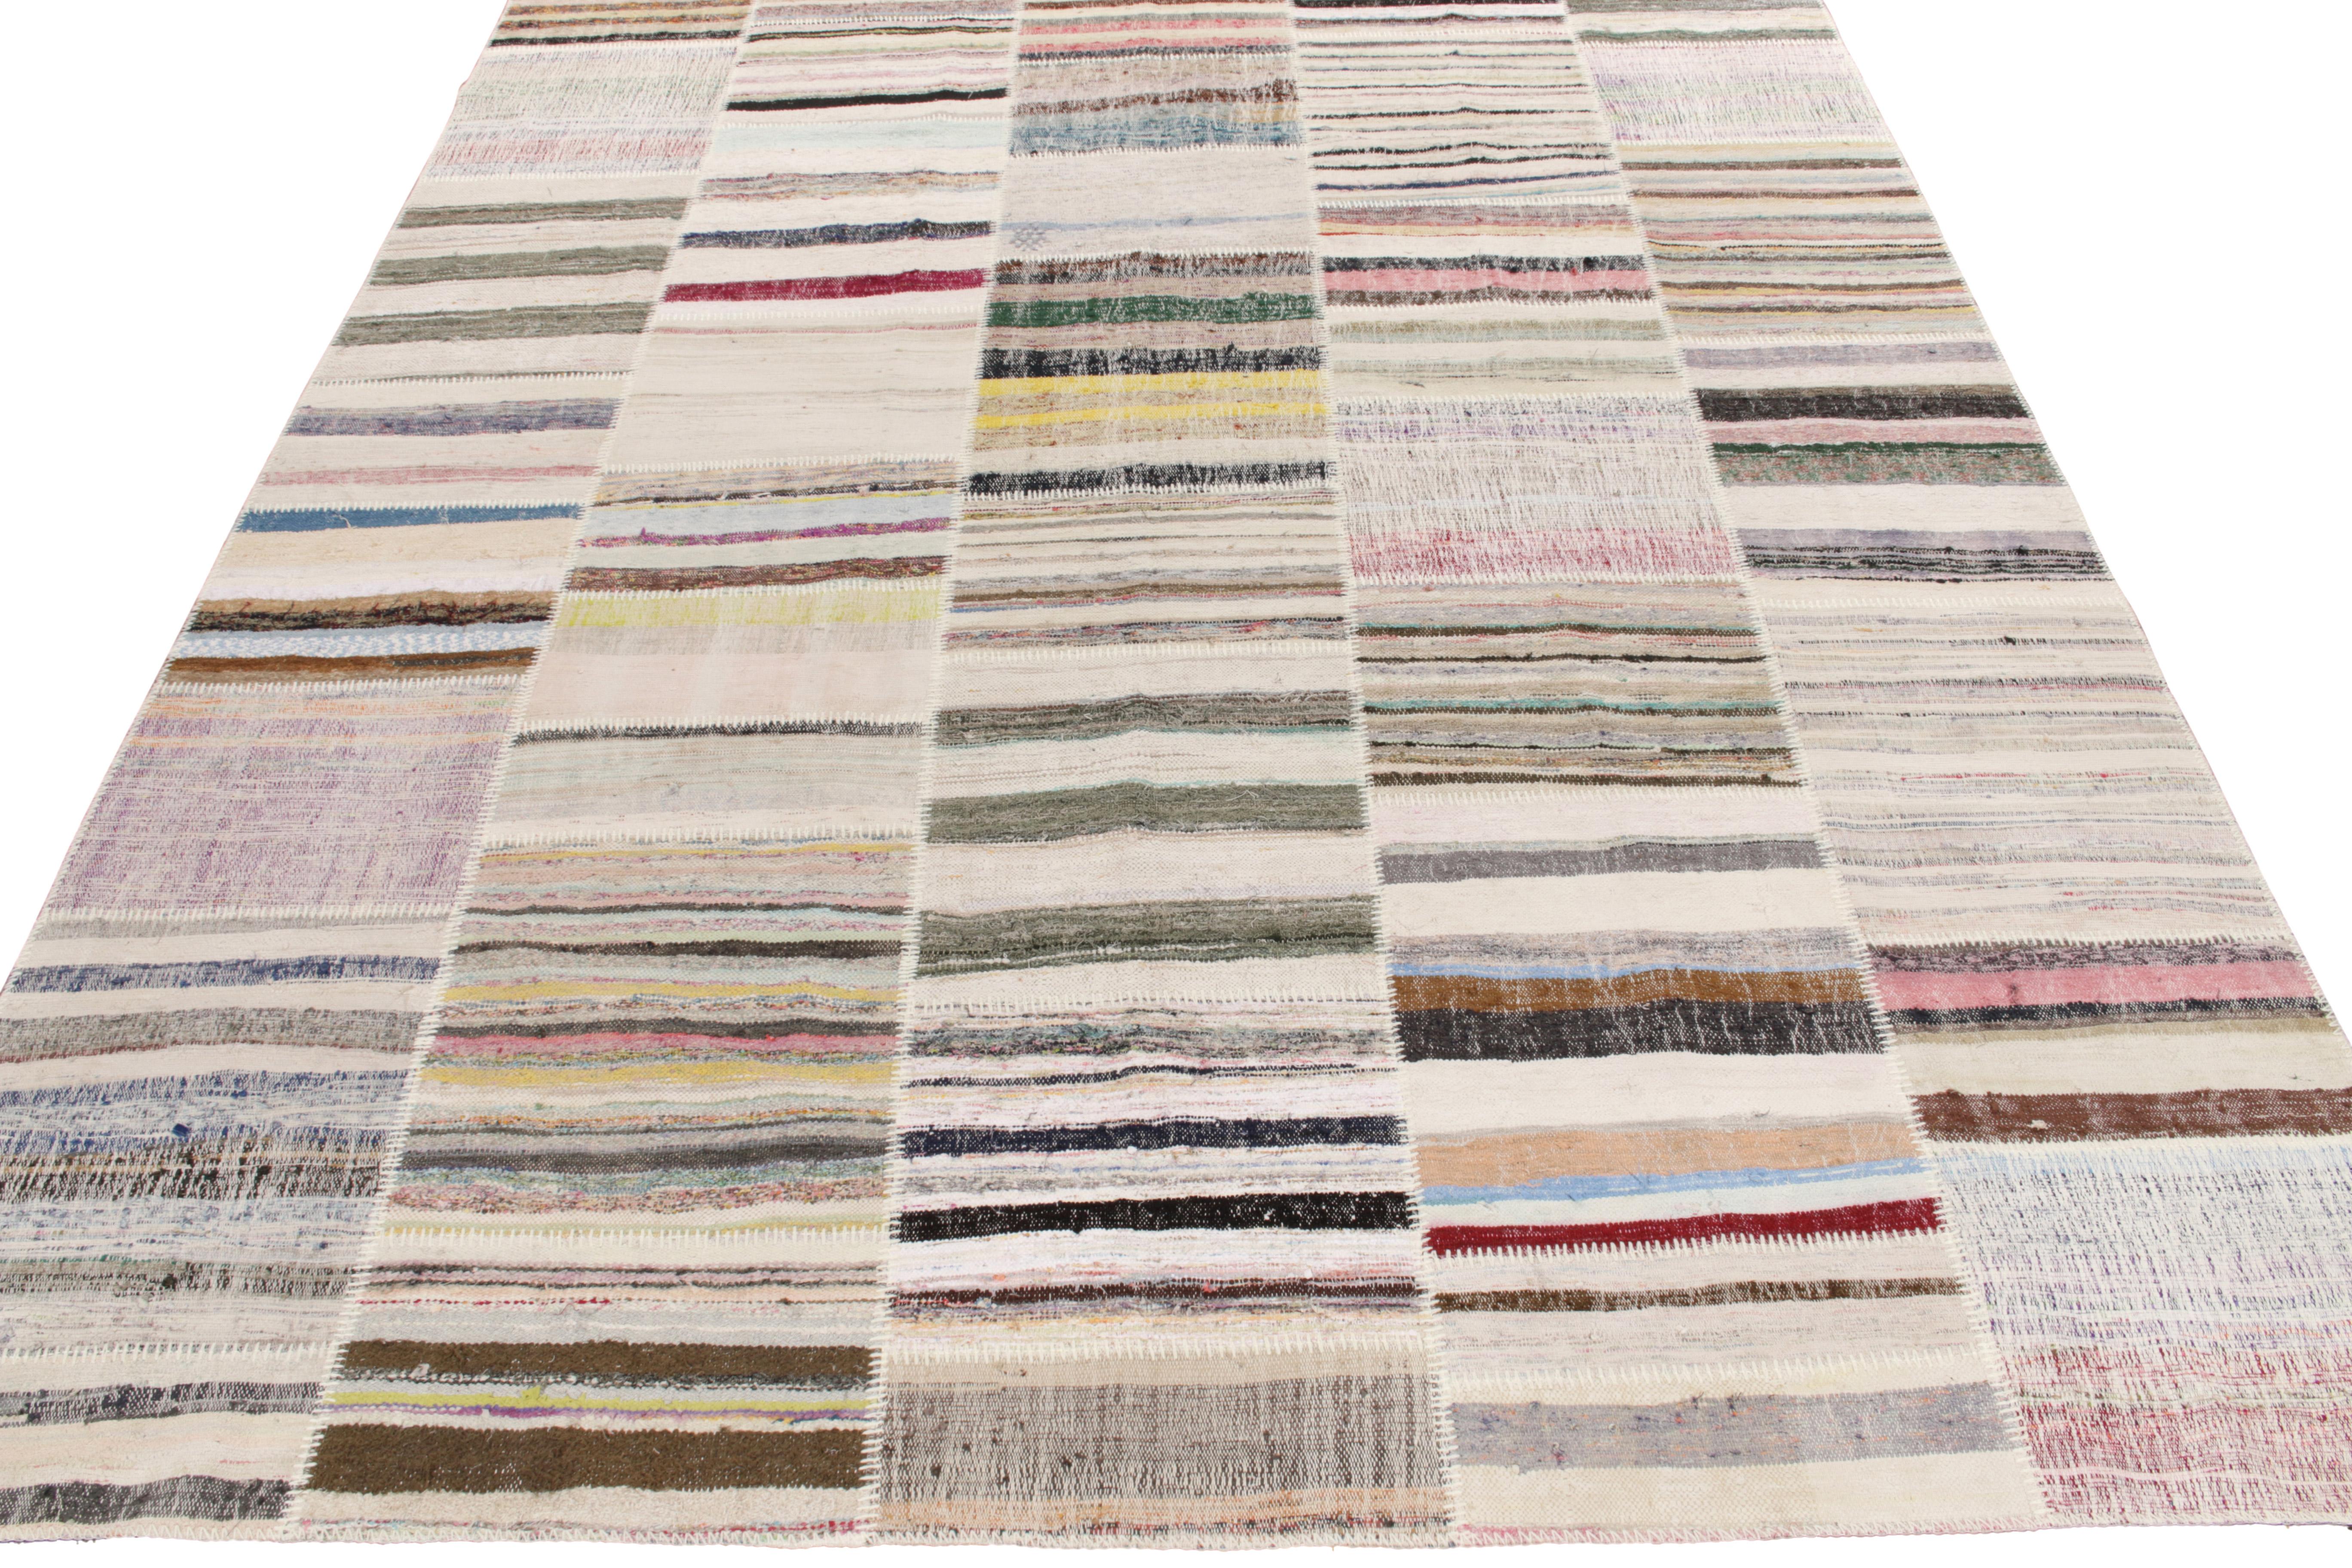 Rug & Kilim ist stolz darauf, seine künstlerische Vision von Patchwork-Kelims zu präsentieren, die Vintage-Garne zu einzigartigen Kunstwerken umgestalten. Dieses 9x12 große Sammlerstück zeichnet sich durch ein gestreiftes Muster aus, das in